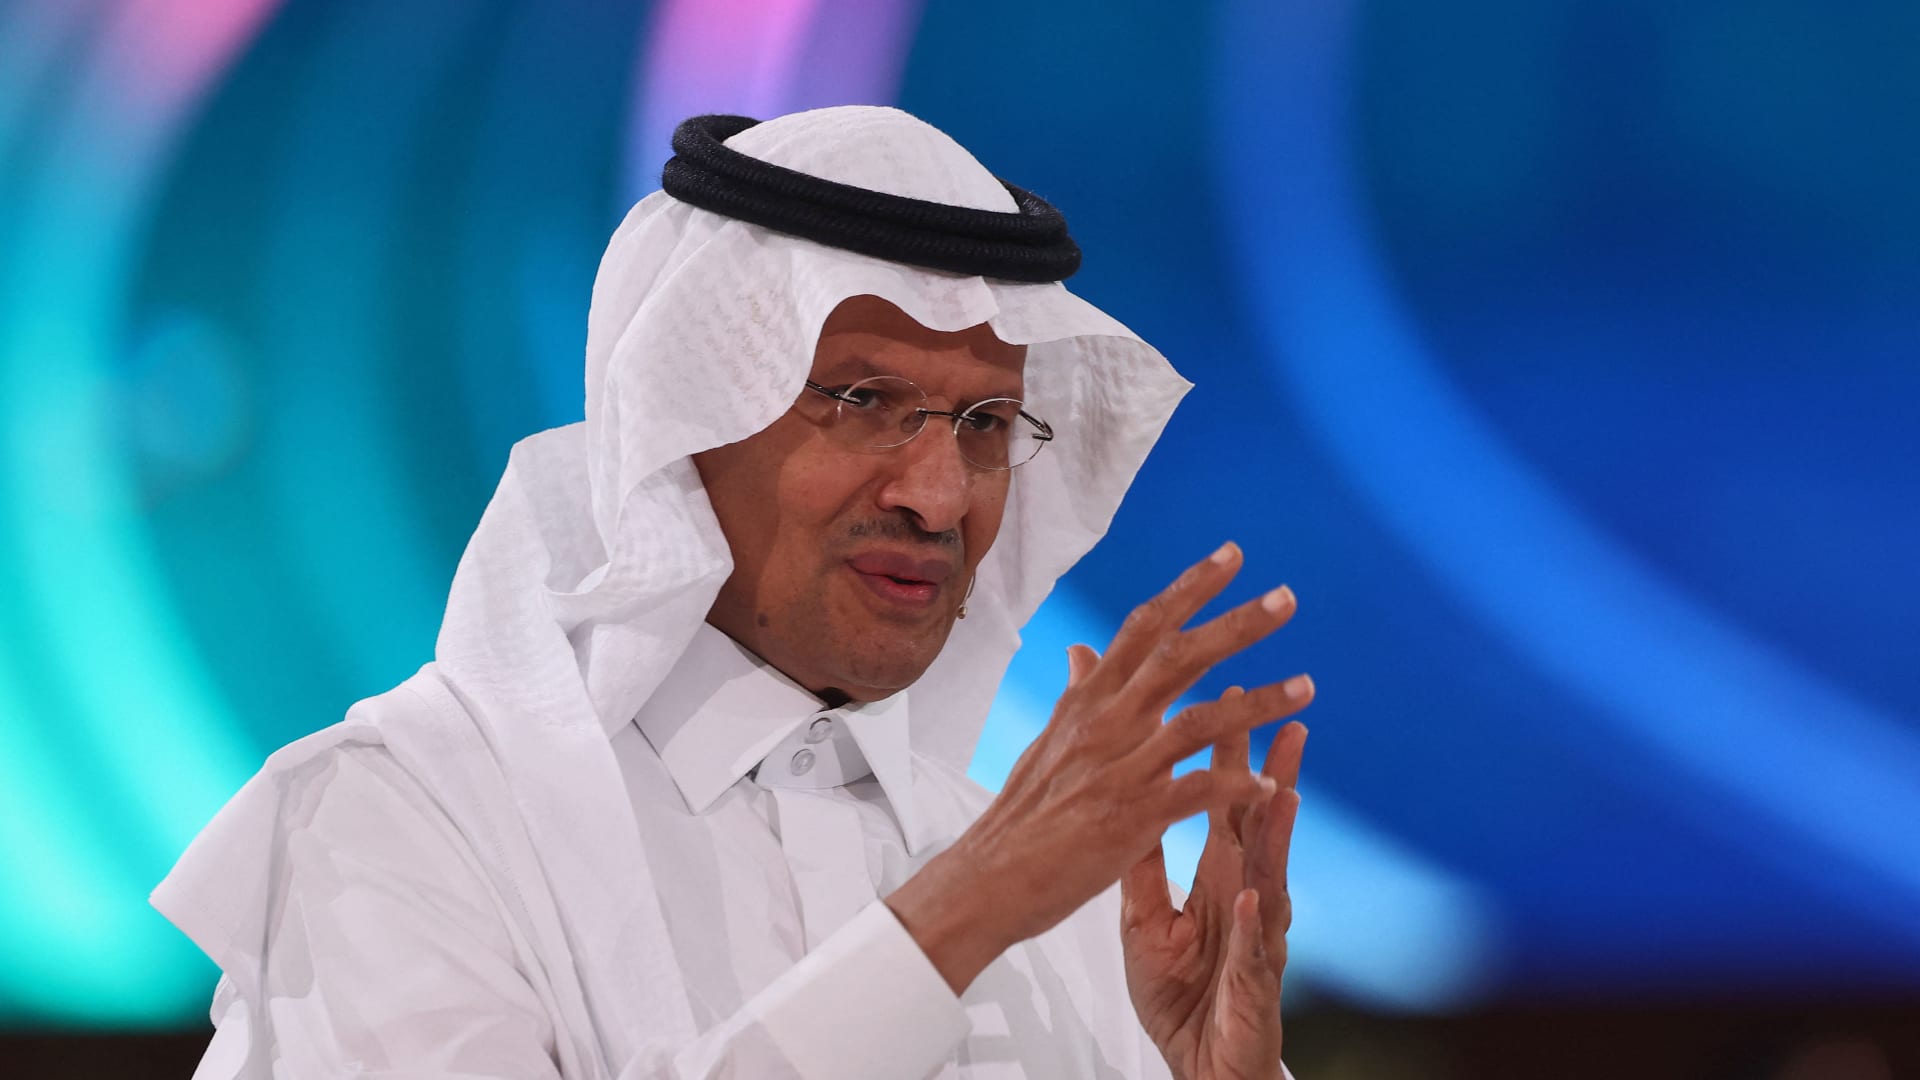 وزير الطاقة السعودي ينتقد غرور بعض المسؤولين: هناك من يُحجم هذا "التورم"